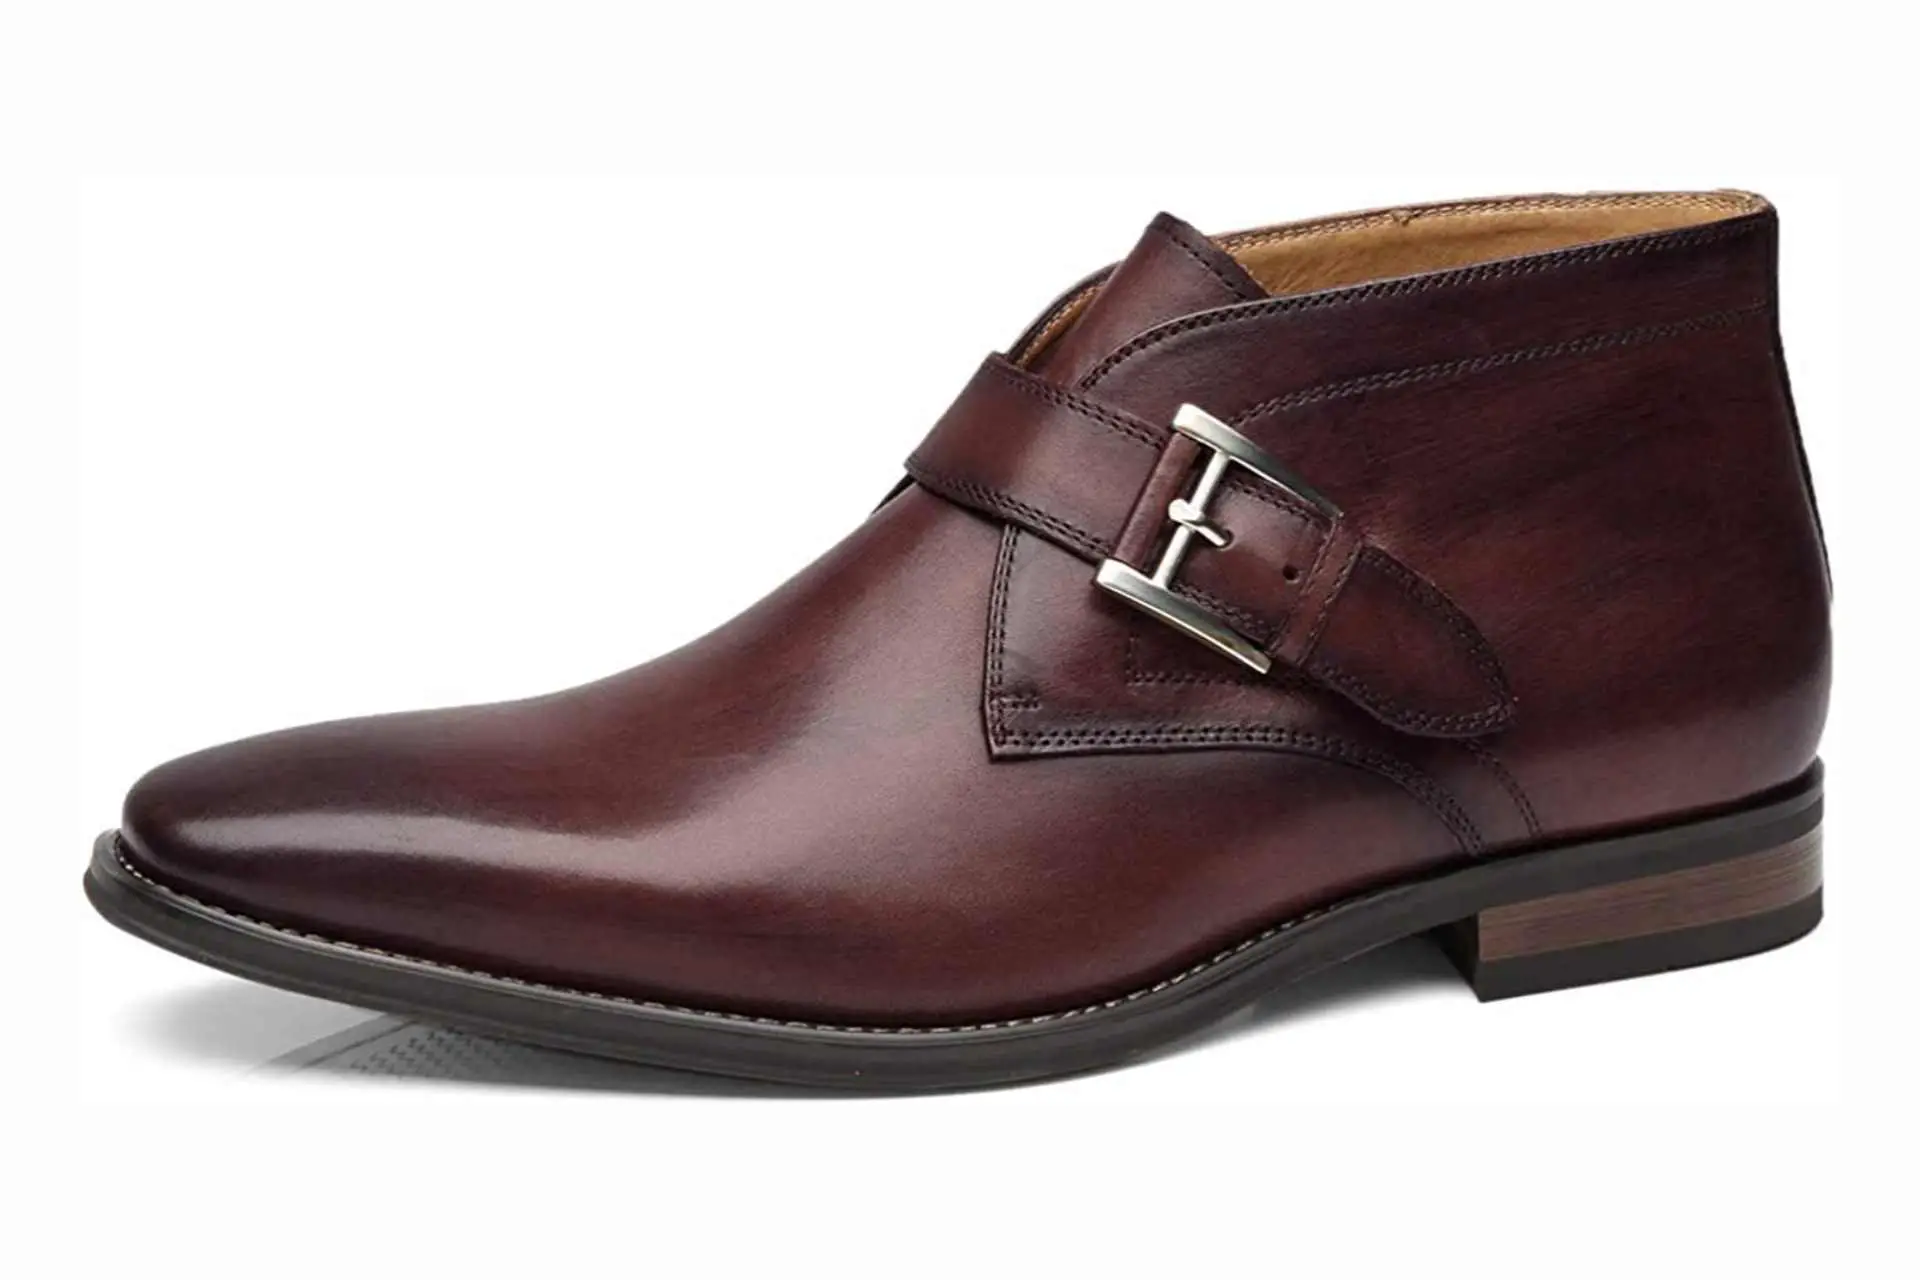 Best men's brown Monk strap shoes